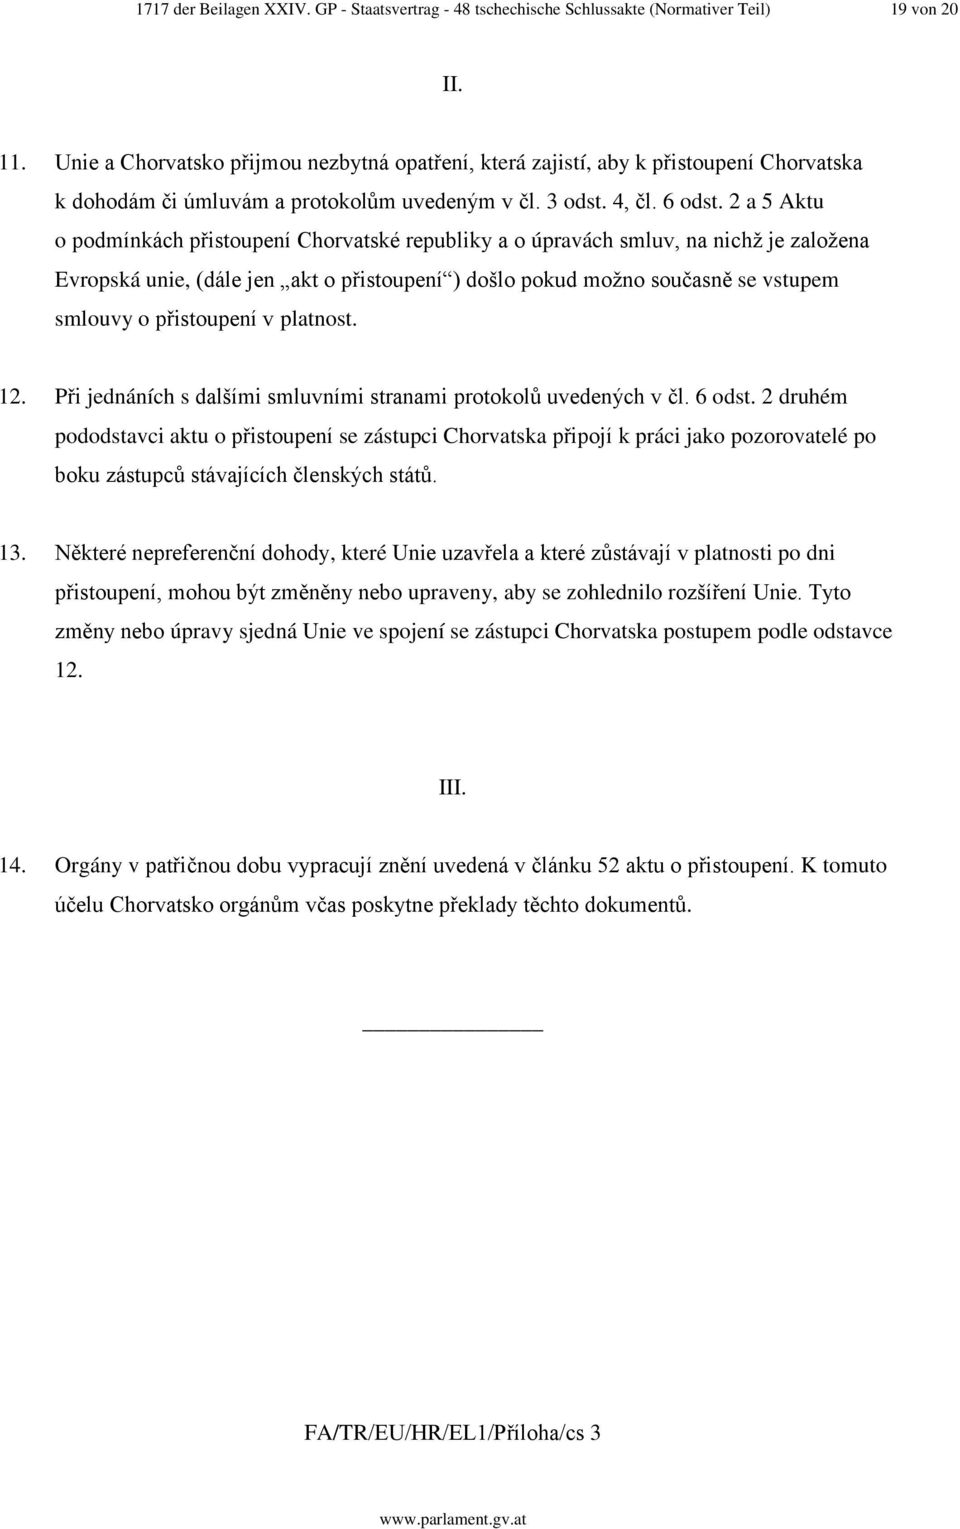 2 a 5 Aktu o podmínkách přistoupení Chorvatské republiky a o úpravách smluv, na nichž je založena Evropská unie, (dále jen akt o přistoupení ) došlo pokud možno současně se vstupem smlouvy o